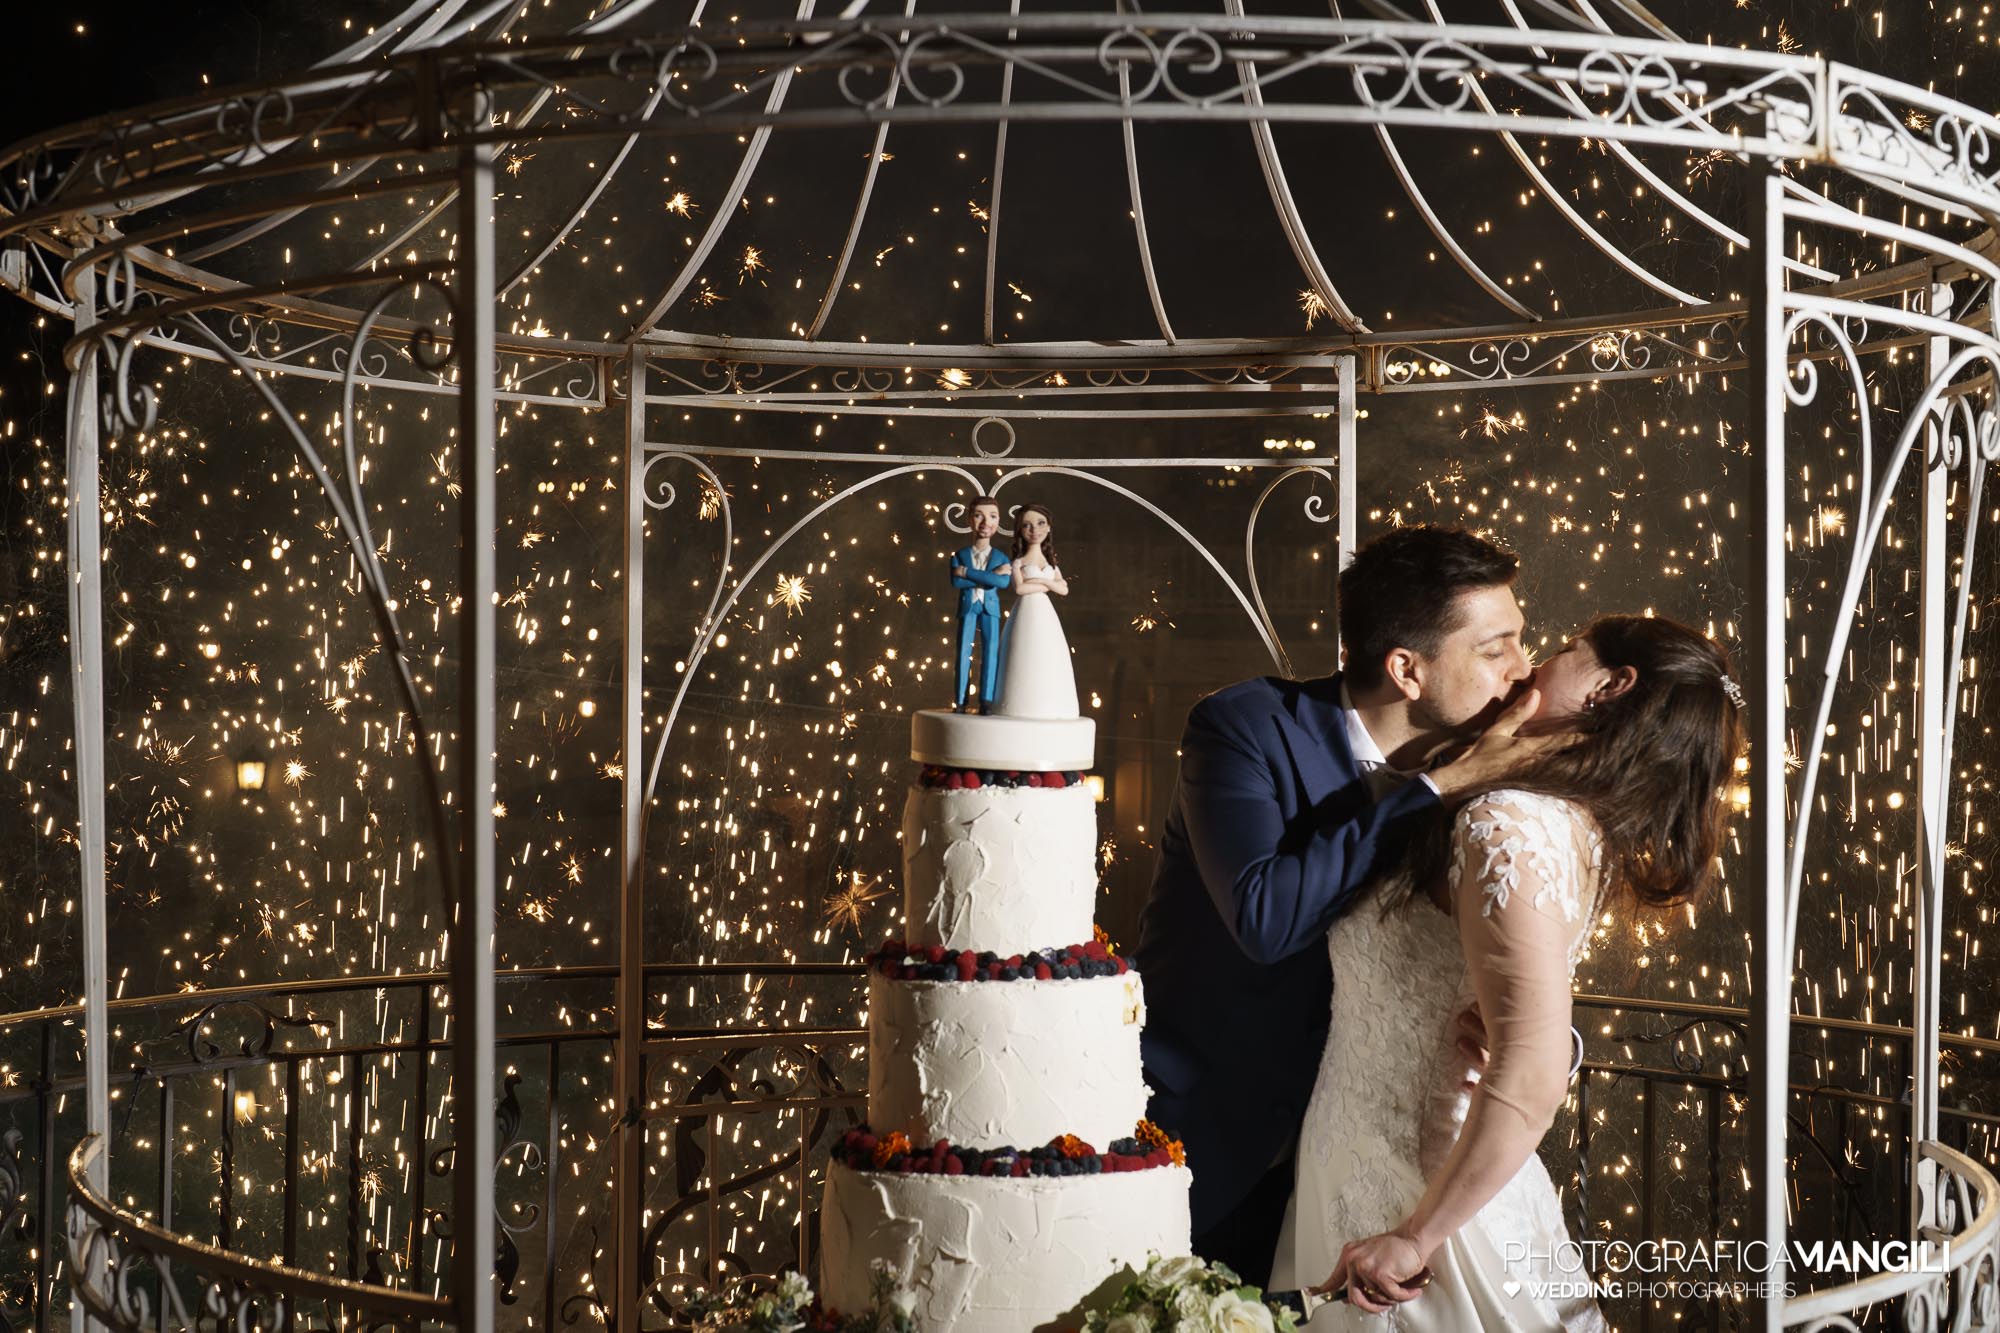 071 foto nozze wedding reportage ritratto bacio torta sposi il fontanile gandosso bergamo chiara oliviero